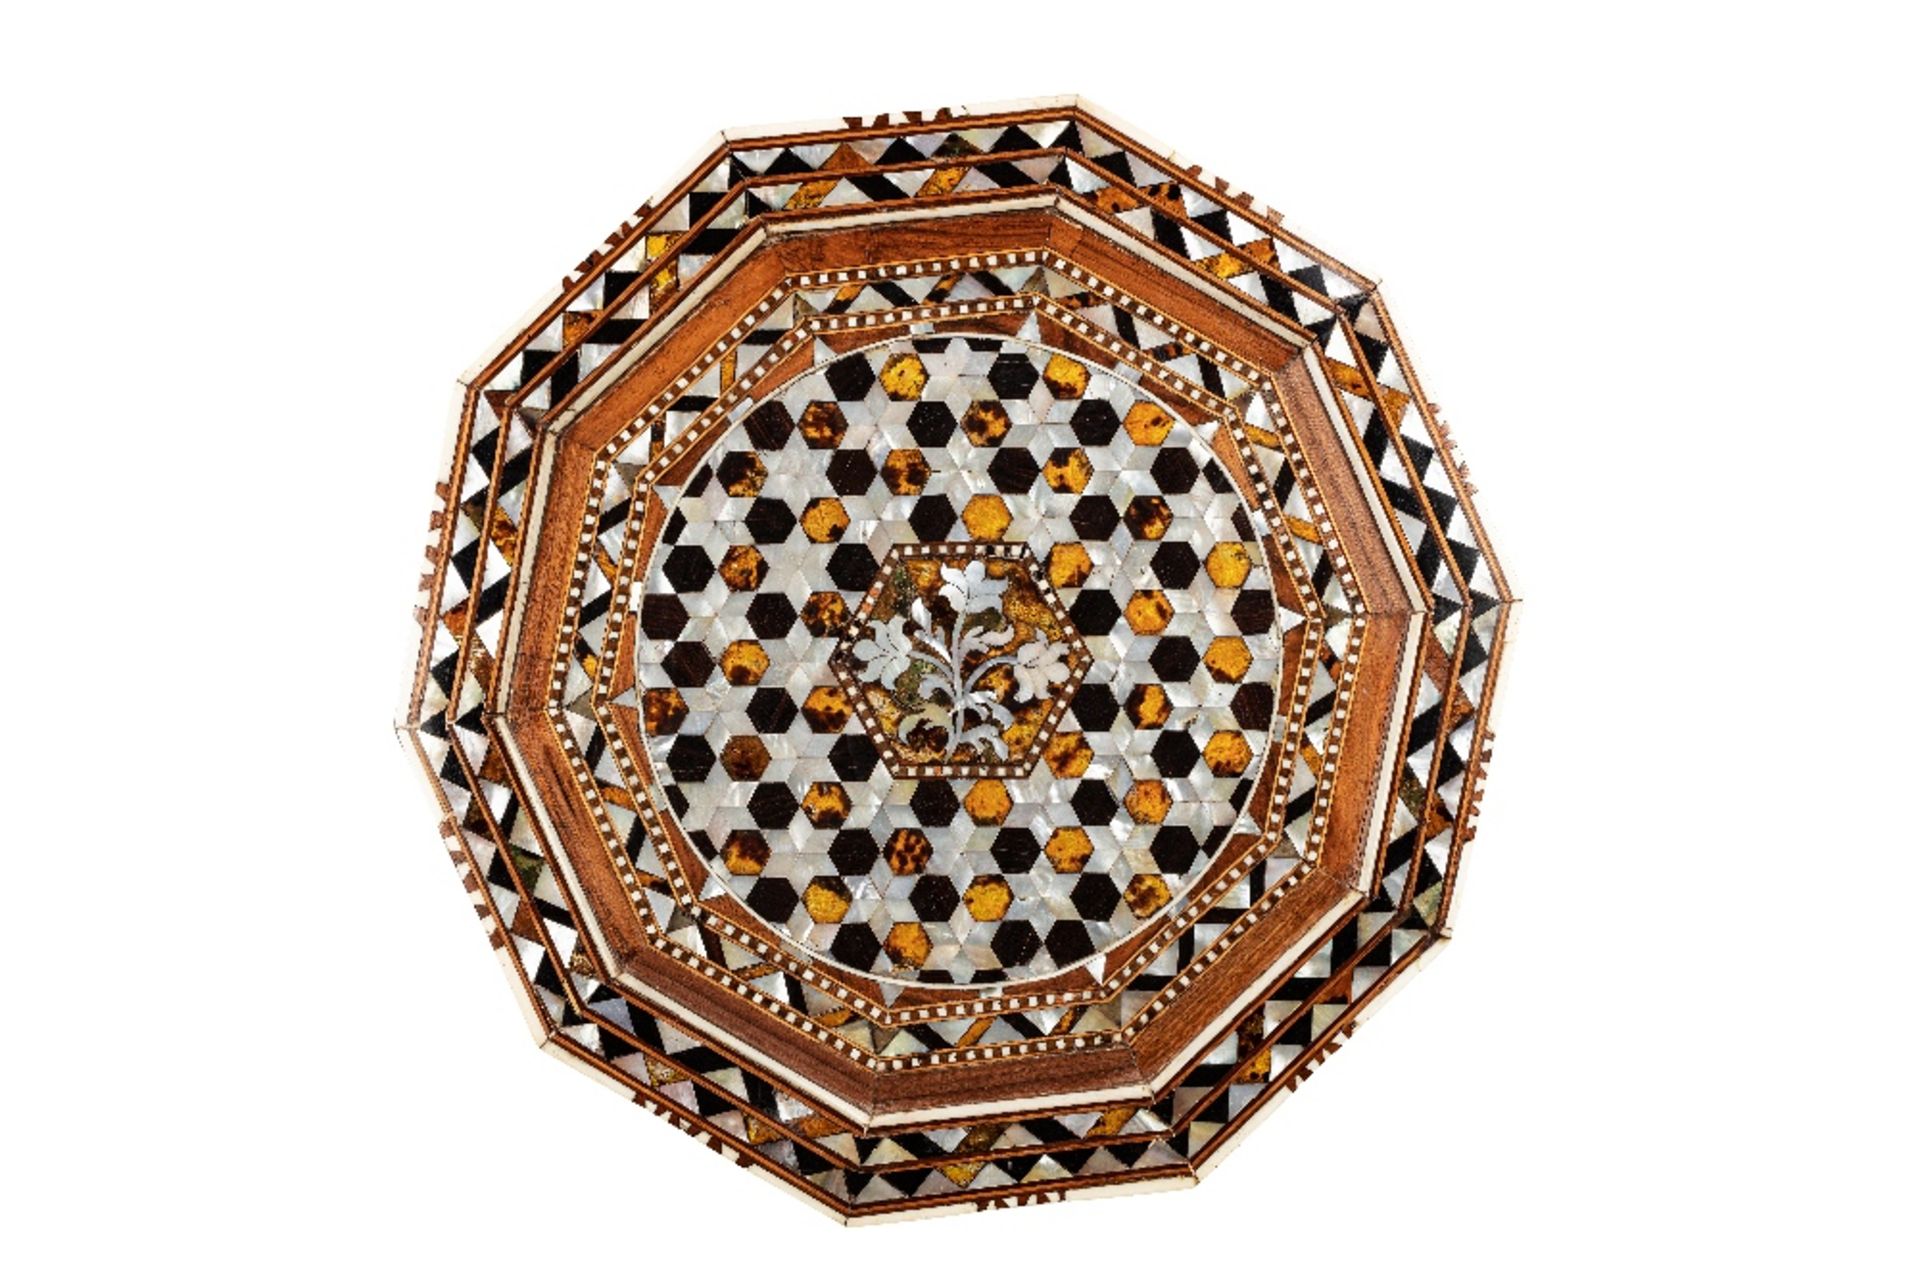 Grand guéridon ottomanTurquie, XVIIIe siècleTable de forme décagonale en bois incrusté de nacre, d'